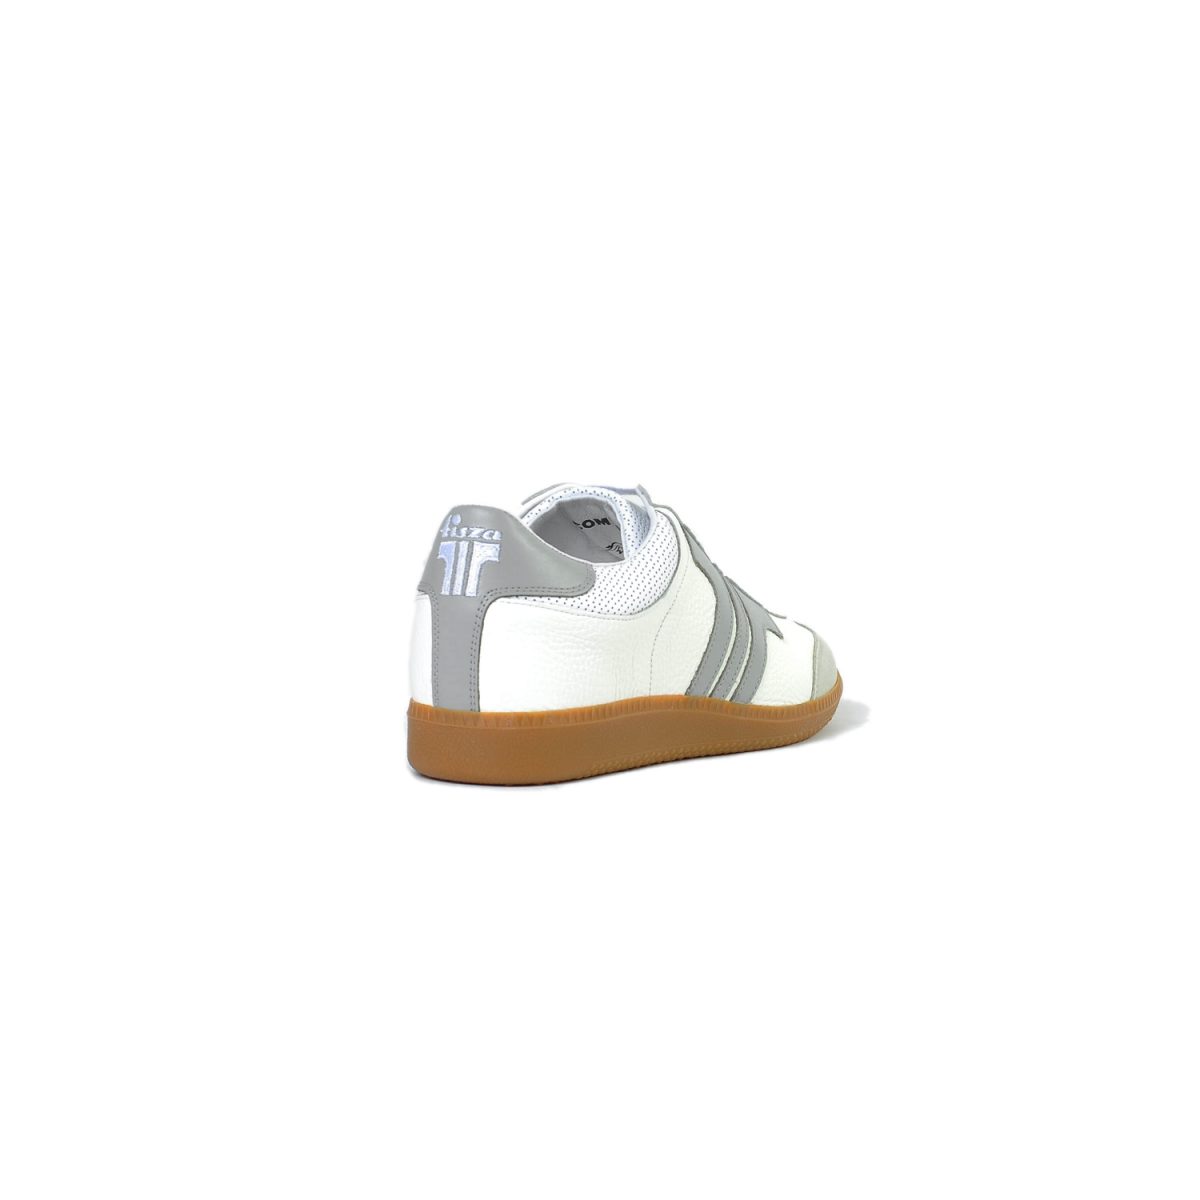 Tisza shoes - Compakt - Mouse